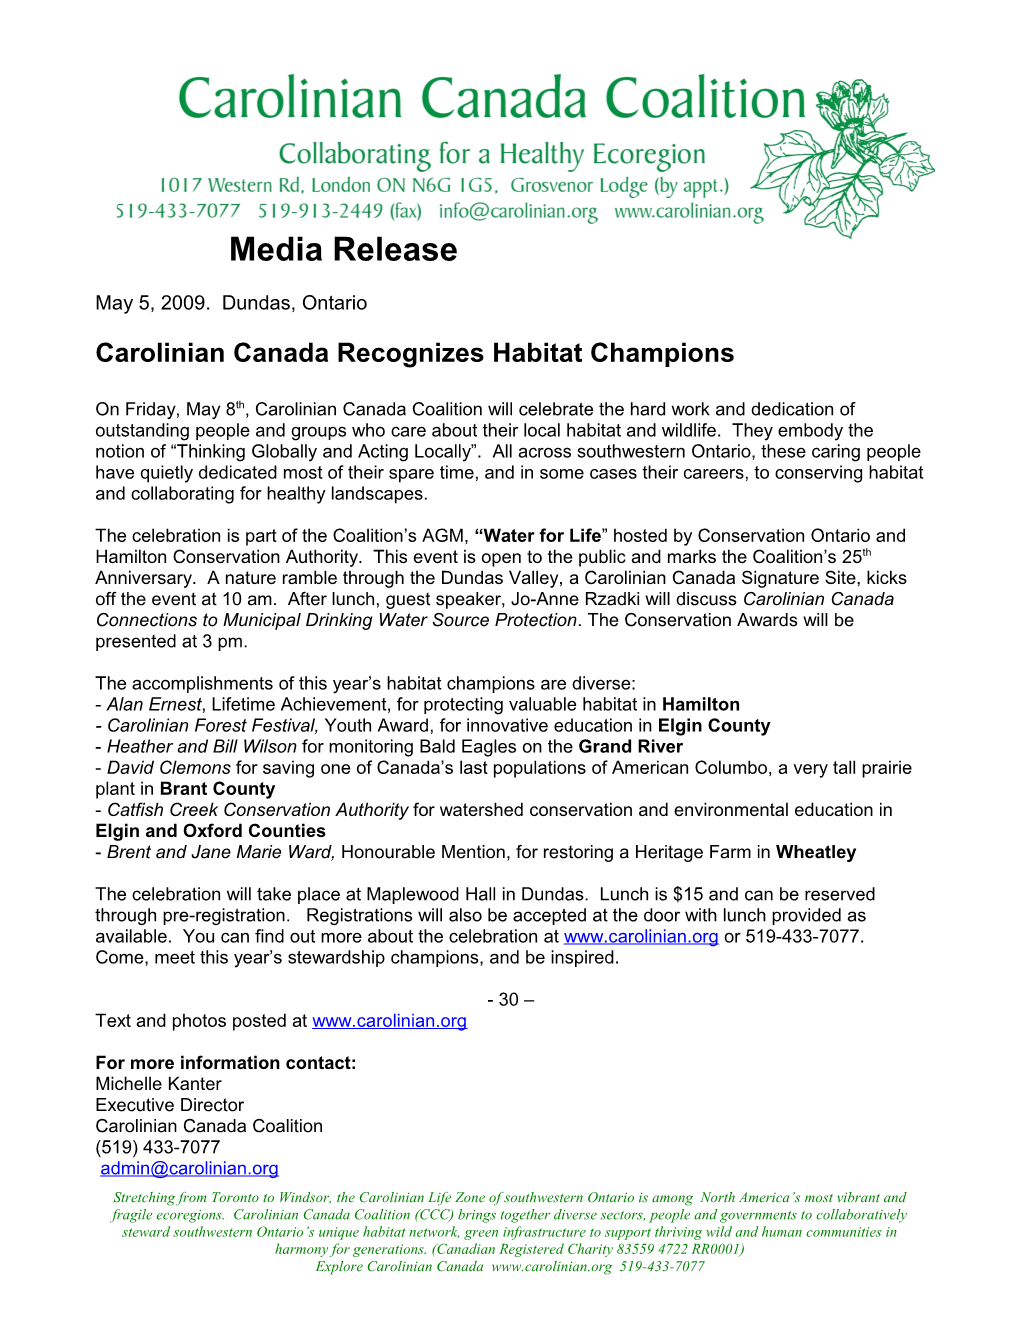 Carolinian Canada Recognizes Habitat Champions